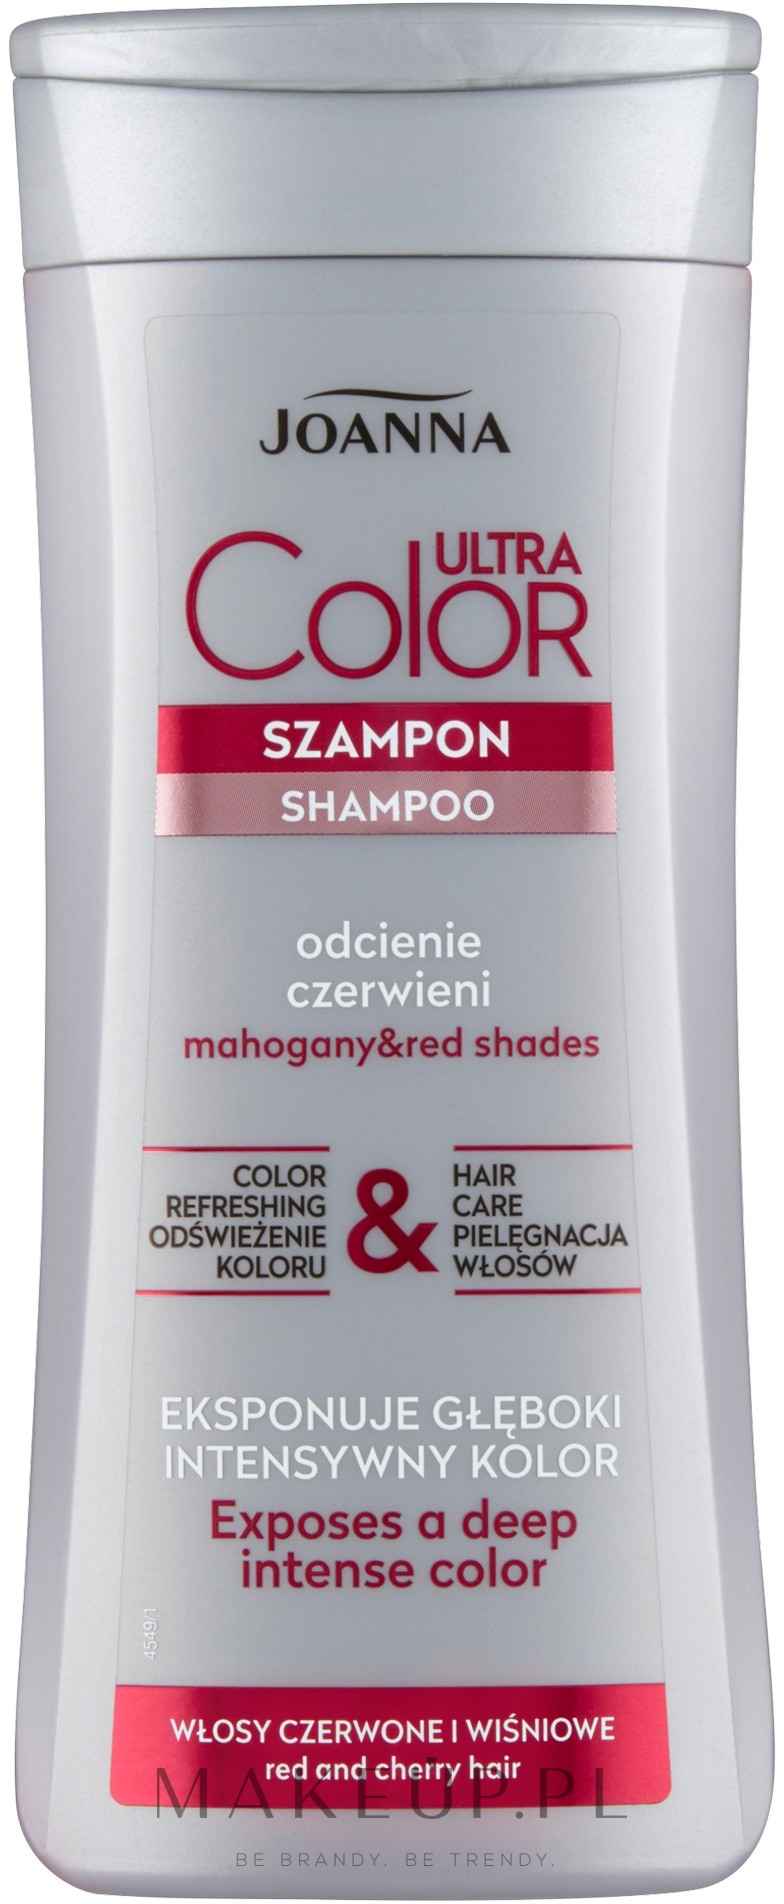 szampon i odżywki do włosów czerwonych joanna